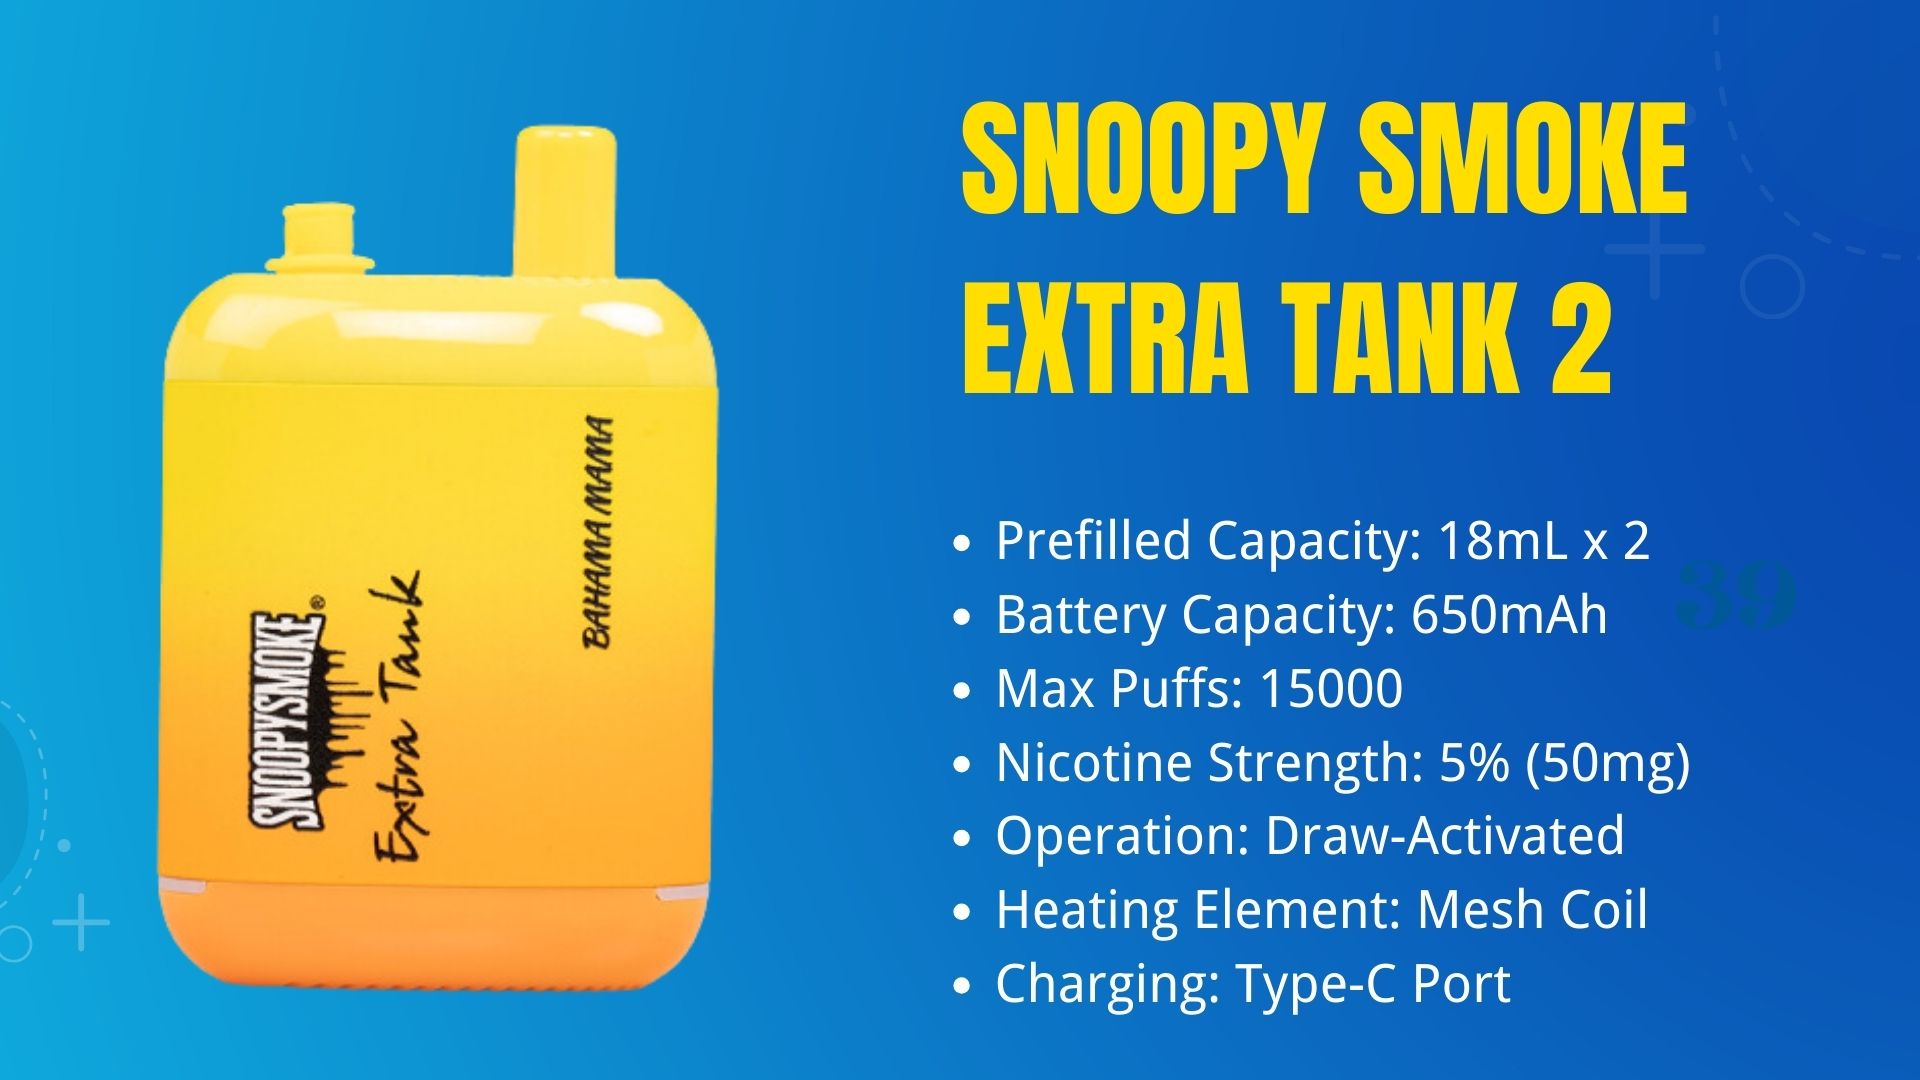 Snoopy Smoke Extra Tank 2